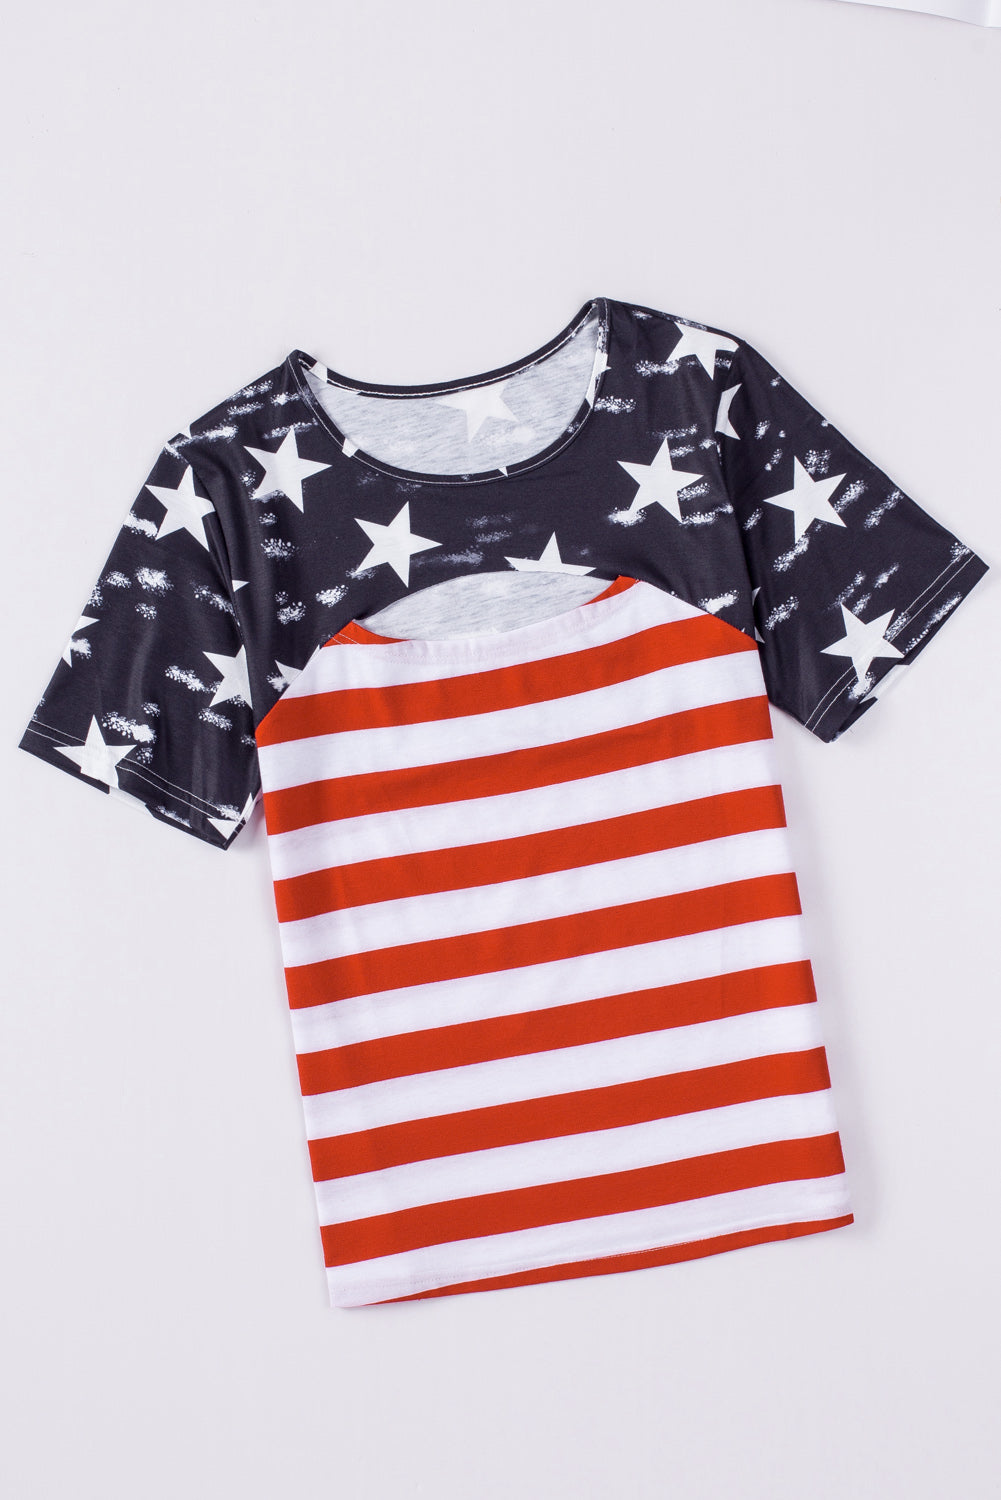 Schwarzes kontrastierendes T-Shirt mit Ausschnitten der amerikanischen Flagge